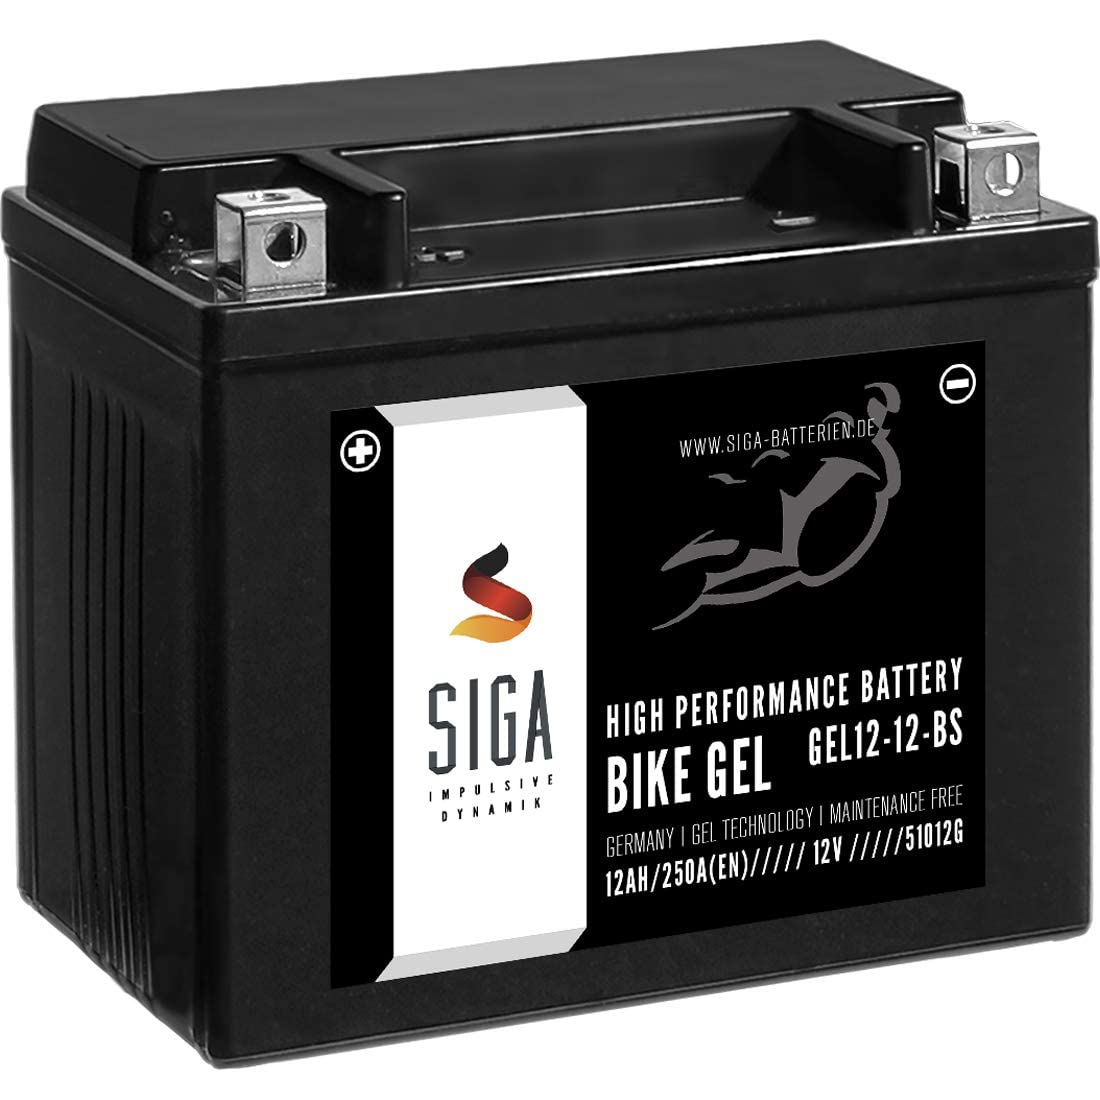 SIGA GEL Motorradbatterie 12V 12Ah 250A/EN GEL Batterie YTX12-BS GEL12-12-BS YTX12-4 GTX12-BS ETX-12-BS 51012 von SIGA IMPULSIVE DYNAMIK